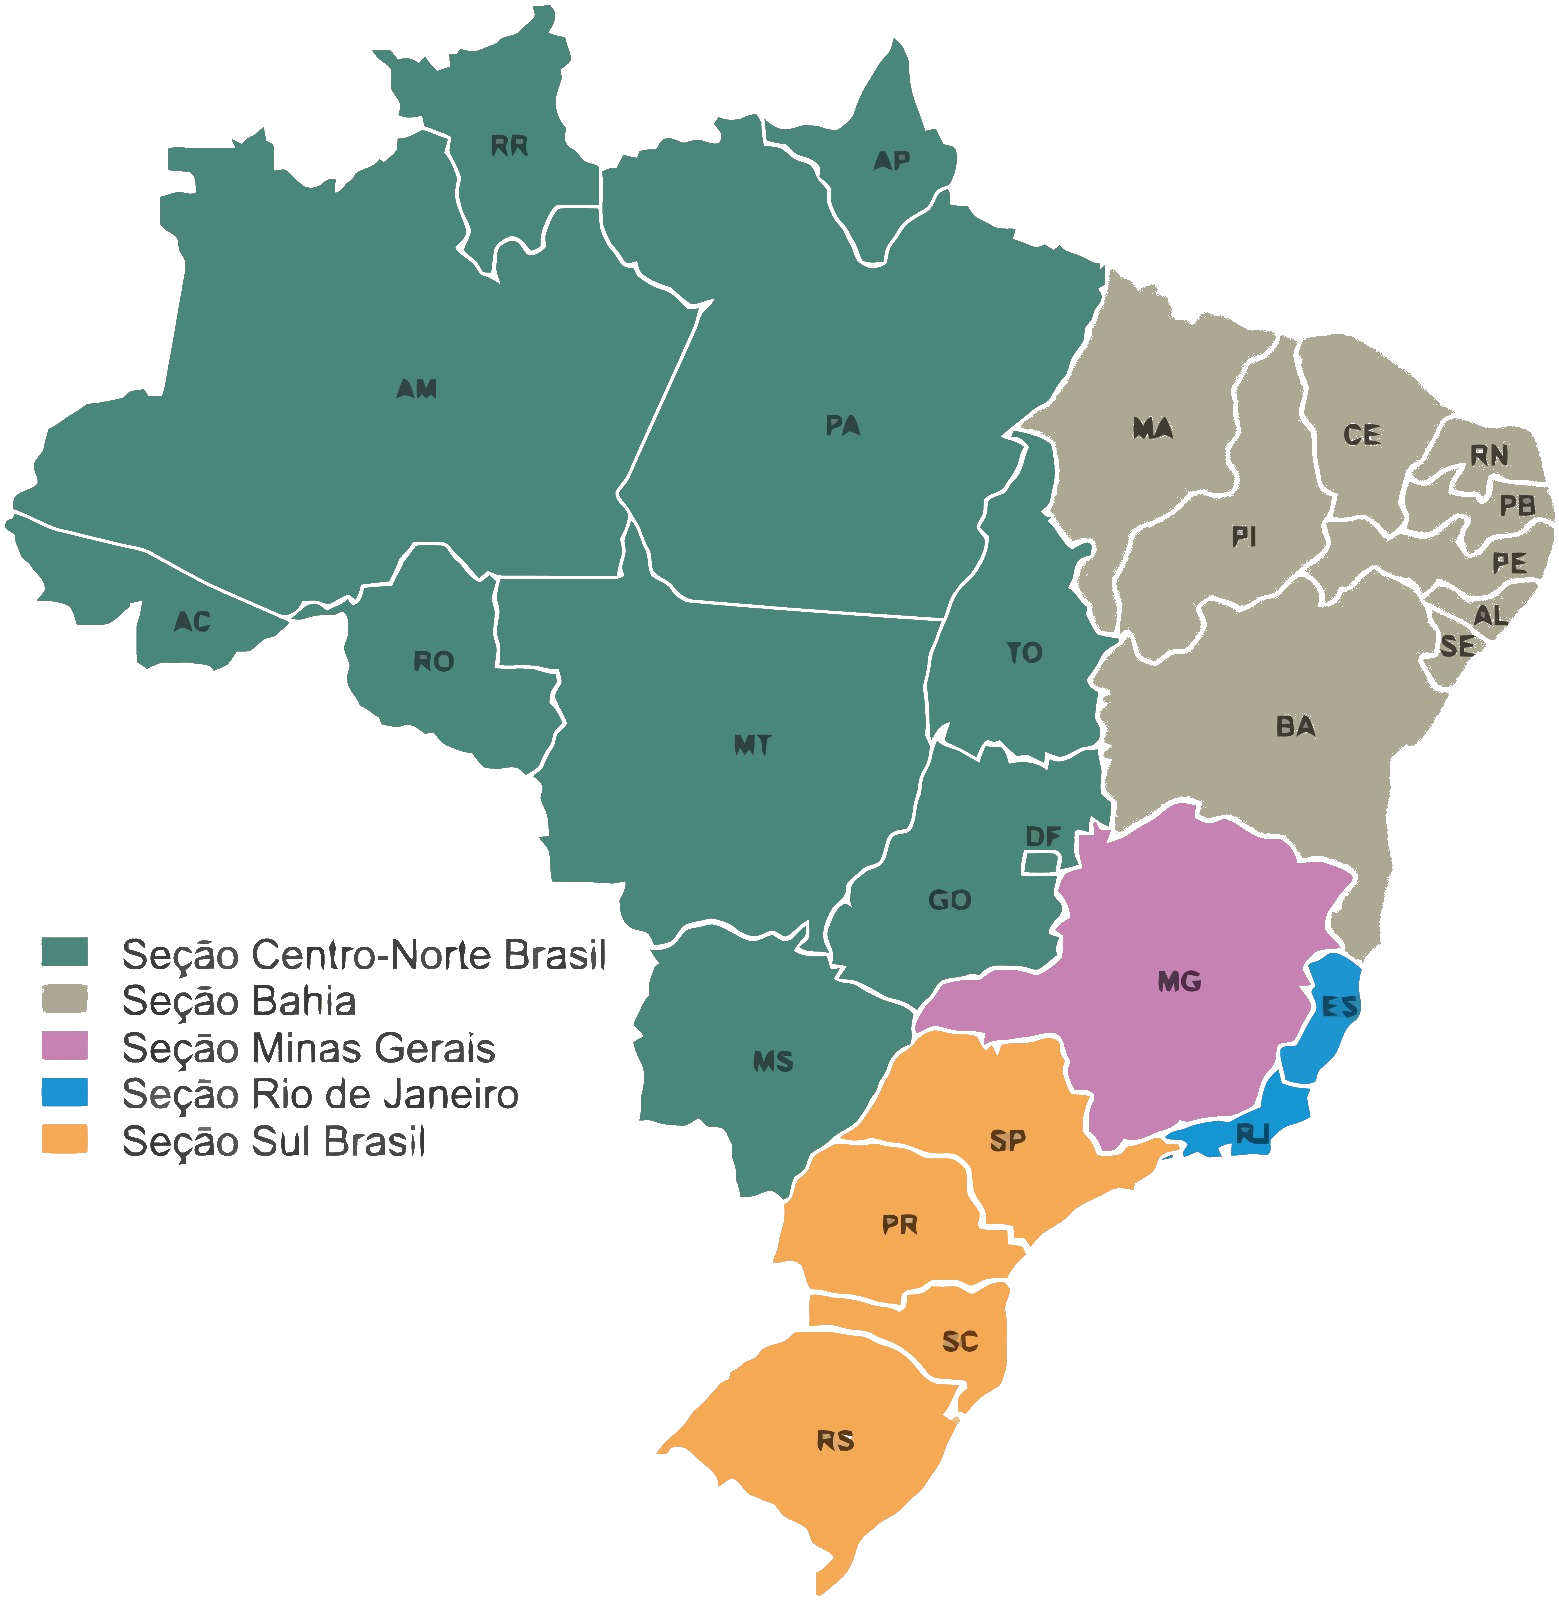 IEEE Brasil